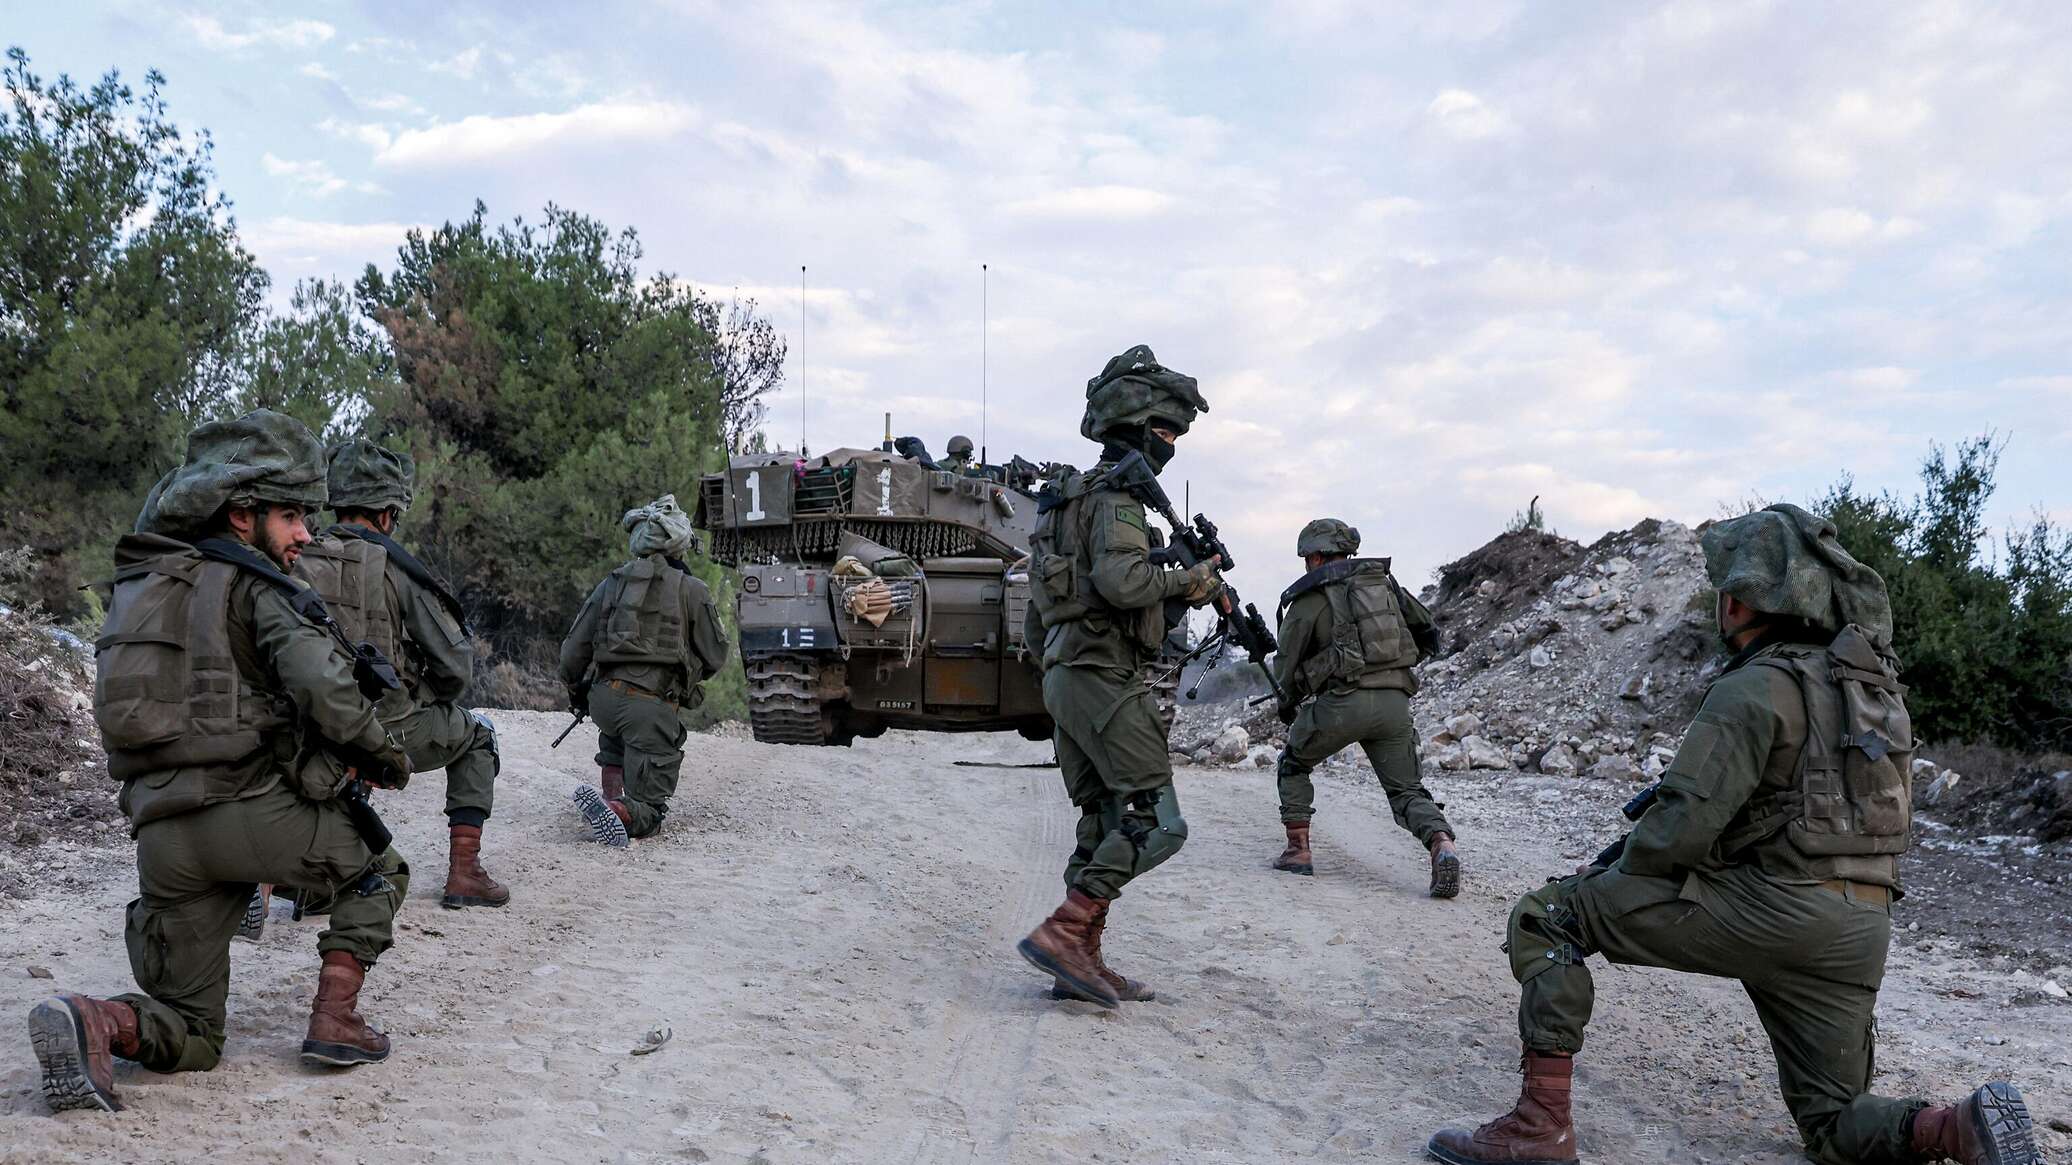 إصابة جنديين إسرائيليين في اشتباك مسلح مع فلسطينيين في الضفة الغربية